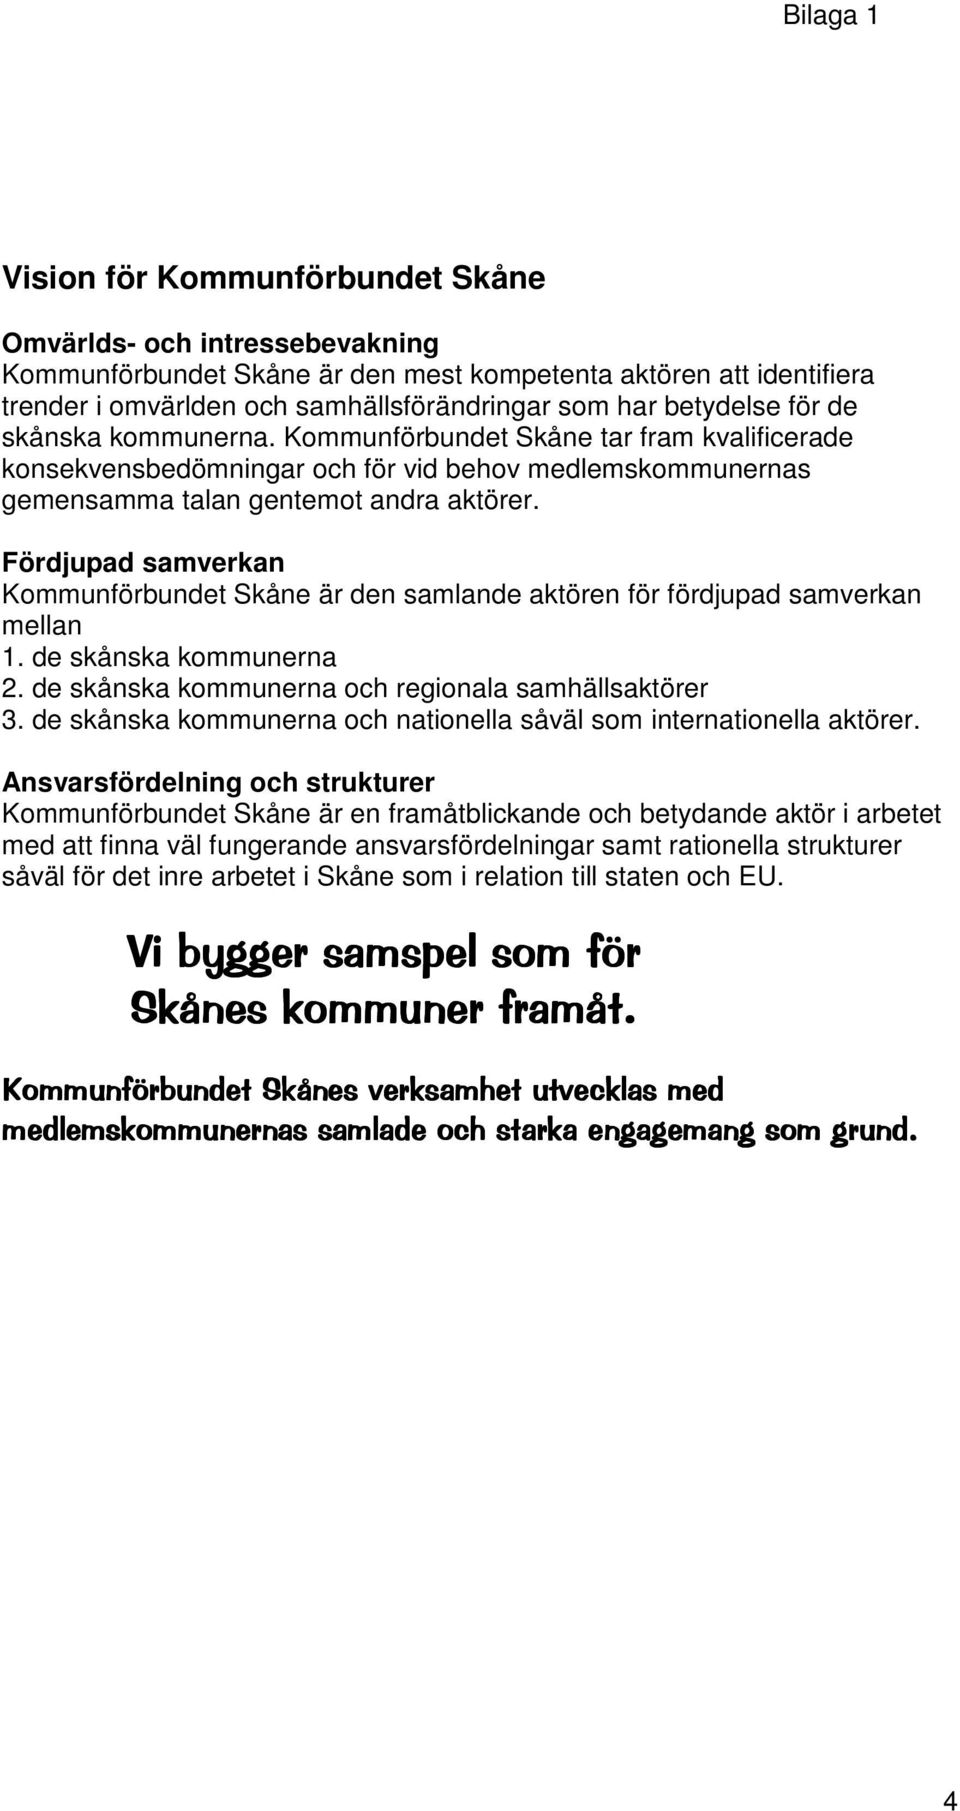 Fördjupad samverkan Kommunförbundet Skåne är den samlande aktören för fördjupad samverkan mellan 1. de skånska kommunerna 2. de skånska kommunerna och regionala samhällsaktörer 3.